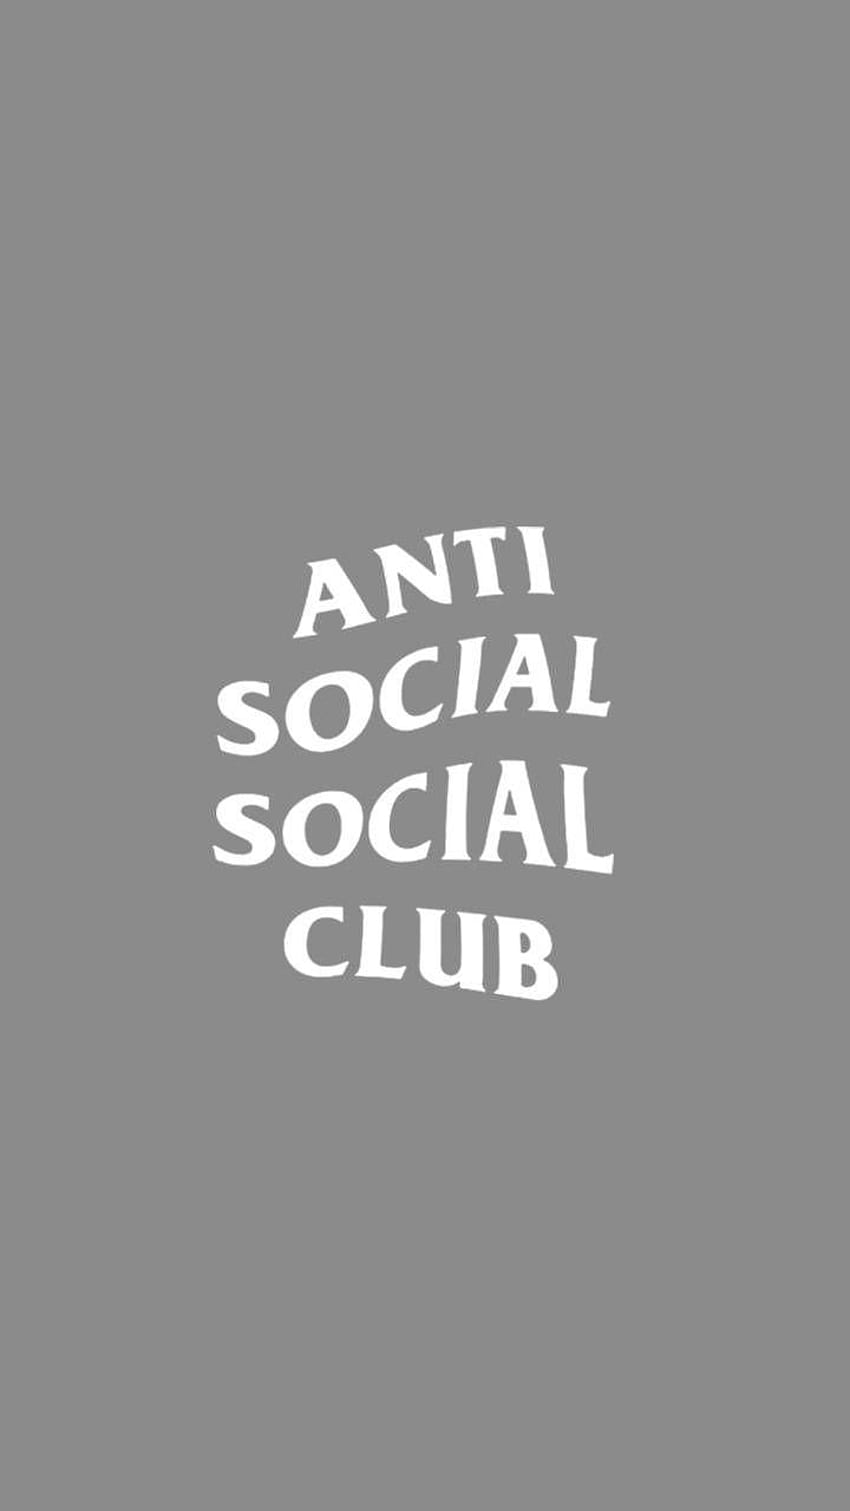 Anti social social club iphone HD phone wallpaper | Pxfuel